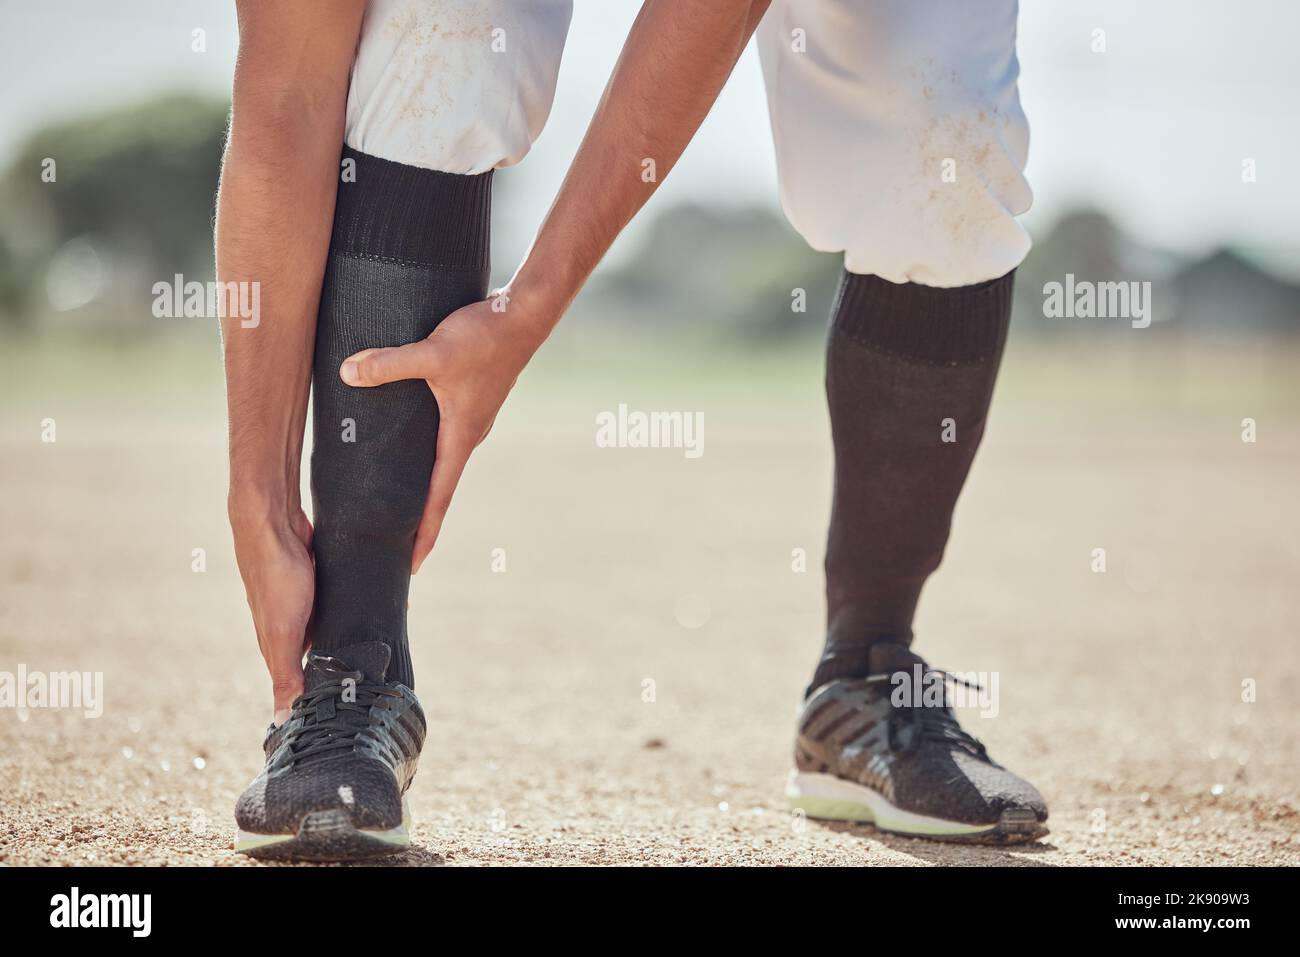 Sport, Feld und Mann mit Knöchelverletzung nach Spiel, Wettkampf oder Baseballtraining. Notfall, Trainingsunfall oder Sportler Beine in Schmerzen Stockfoto